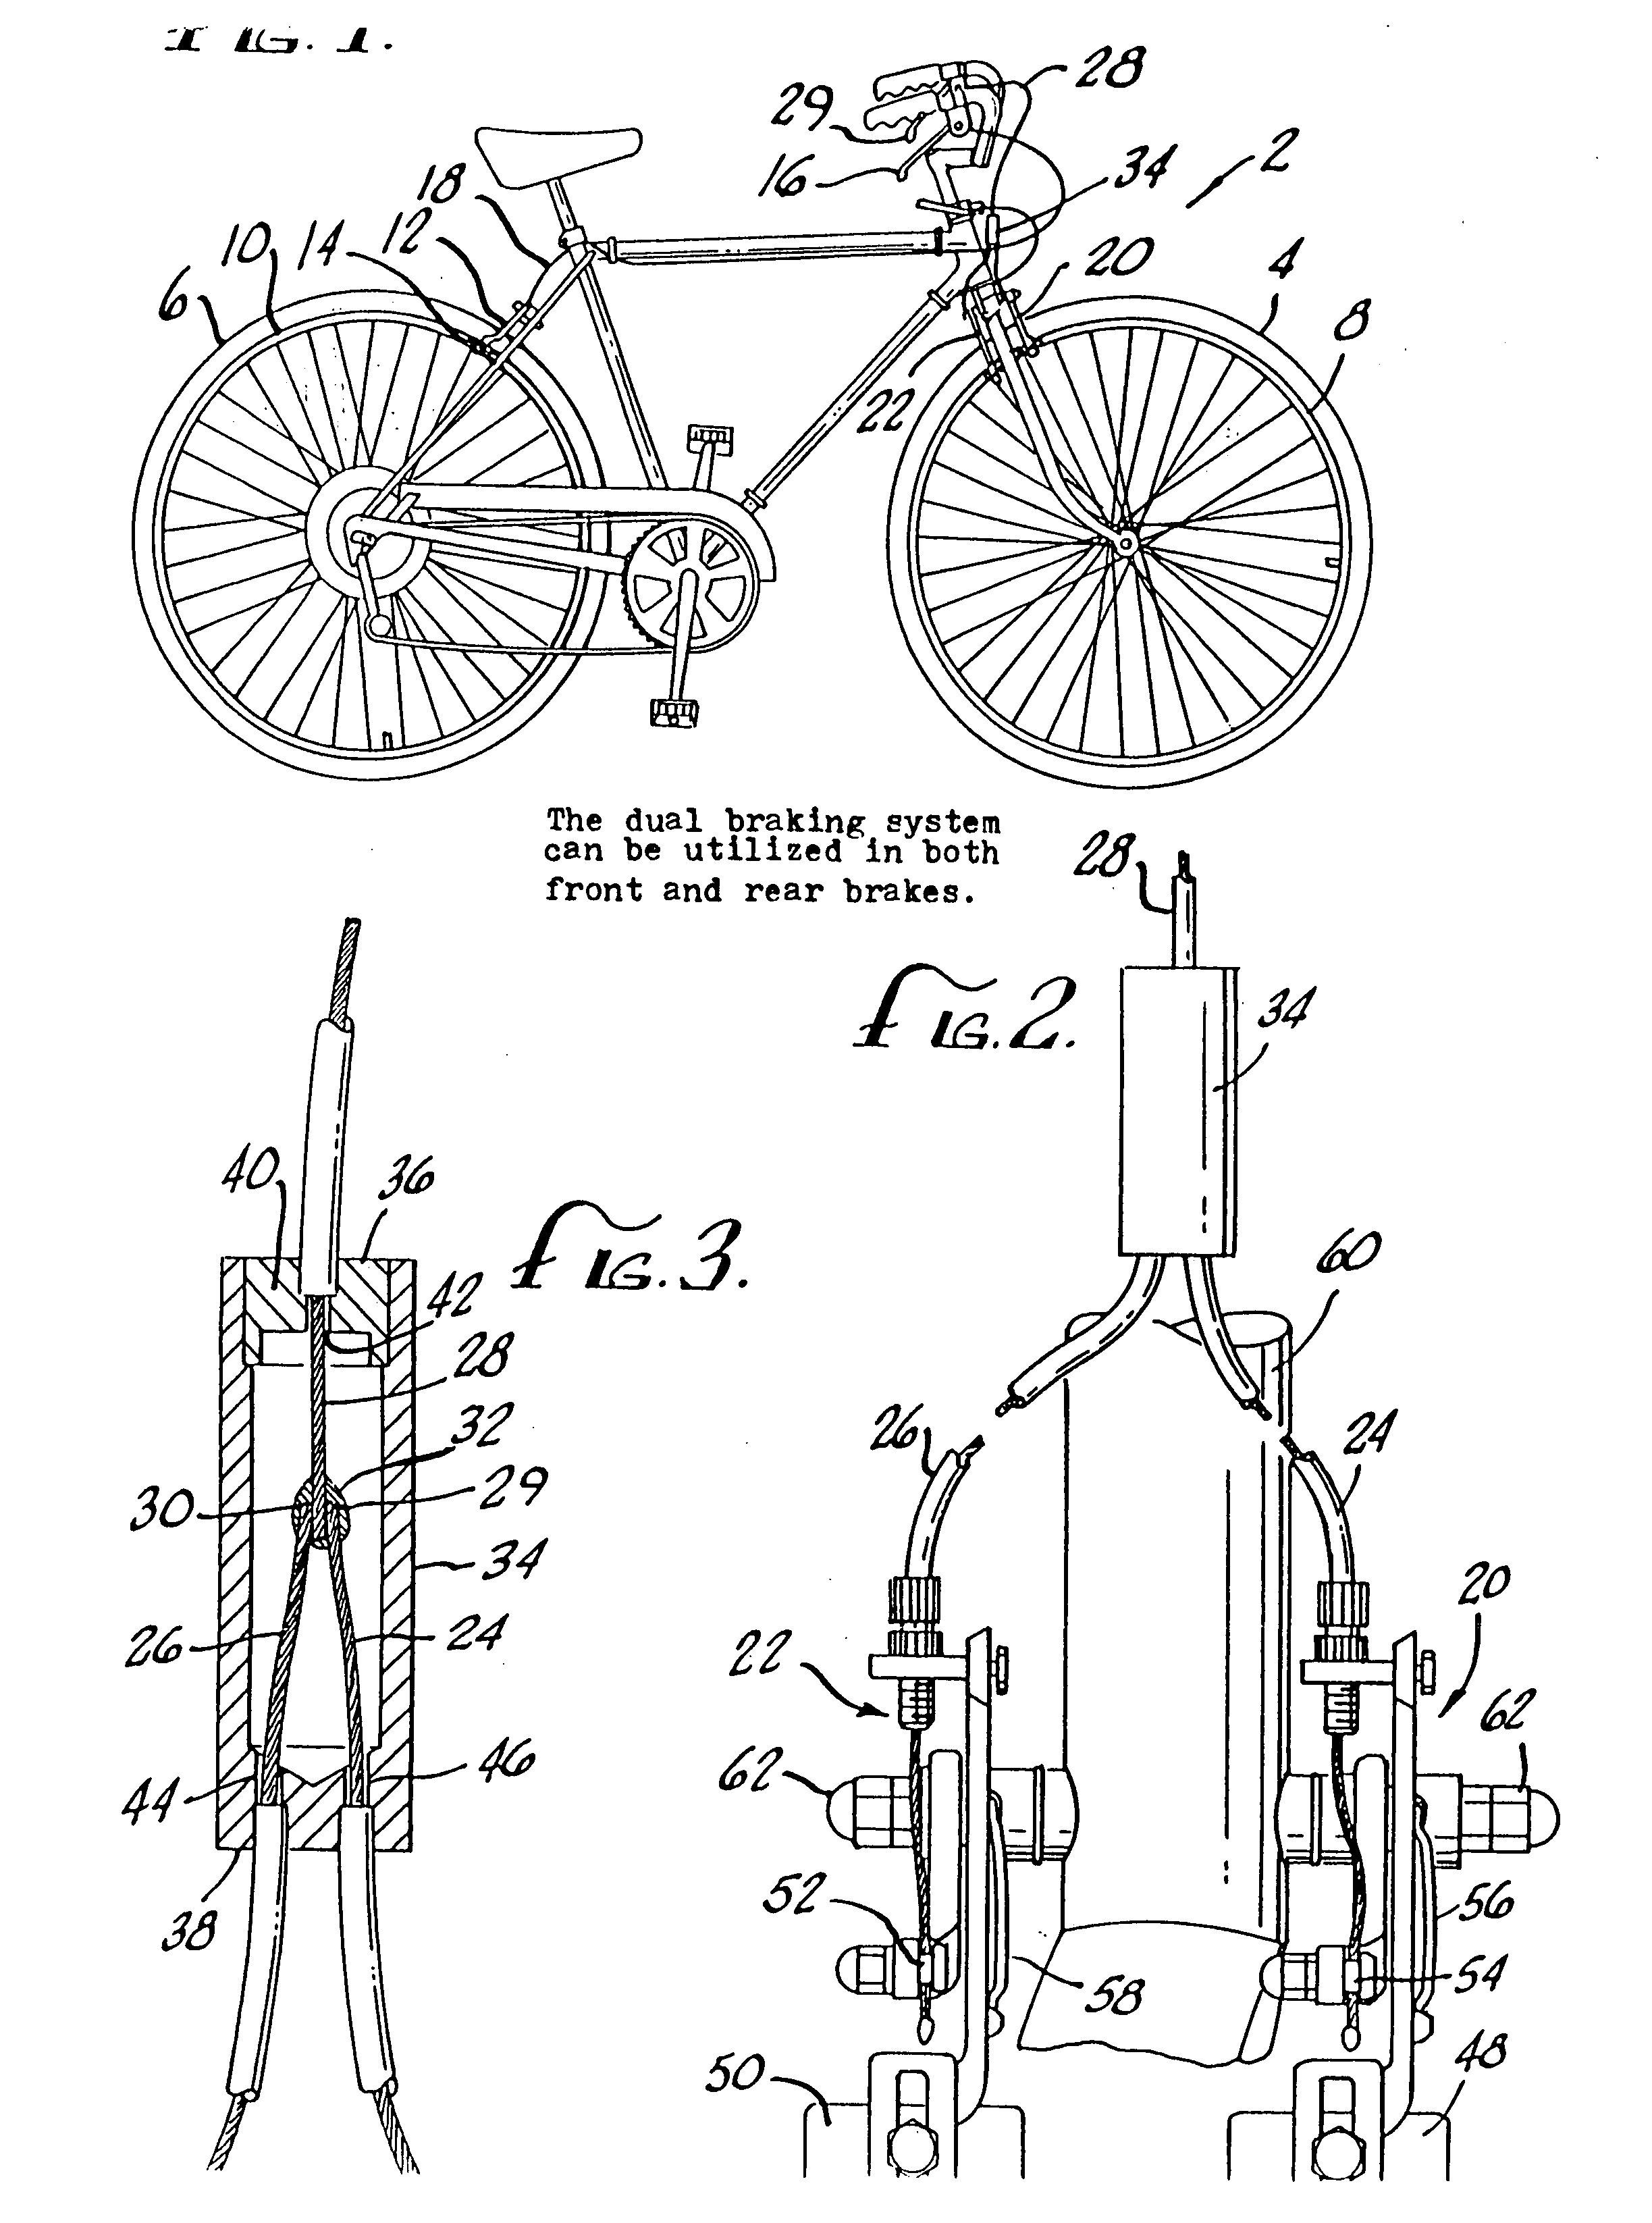 Dual bicycle braking system